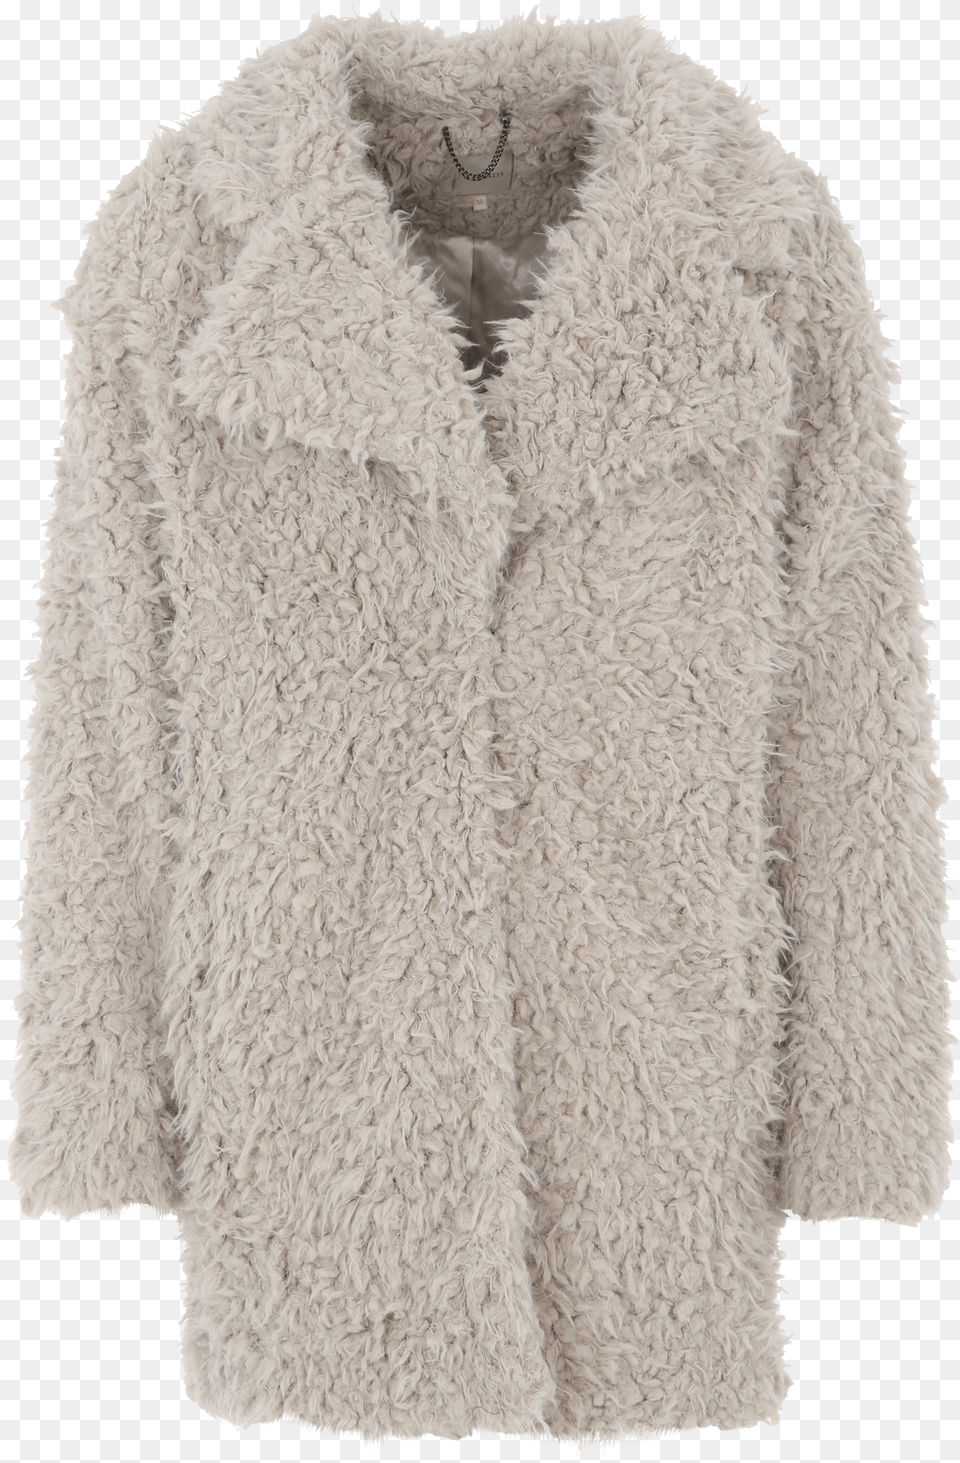 Phoebe Tonkin Pack, Clothing, Coat, Fur, Jacket Png Image